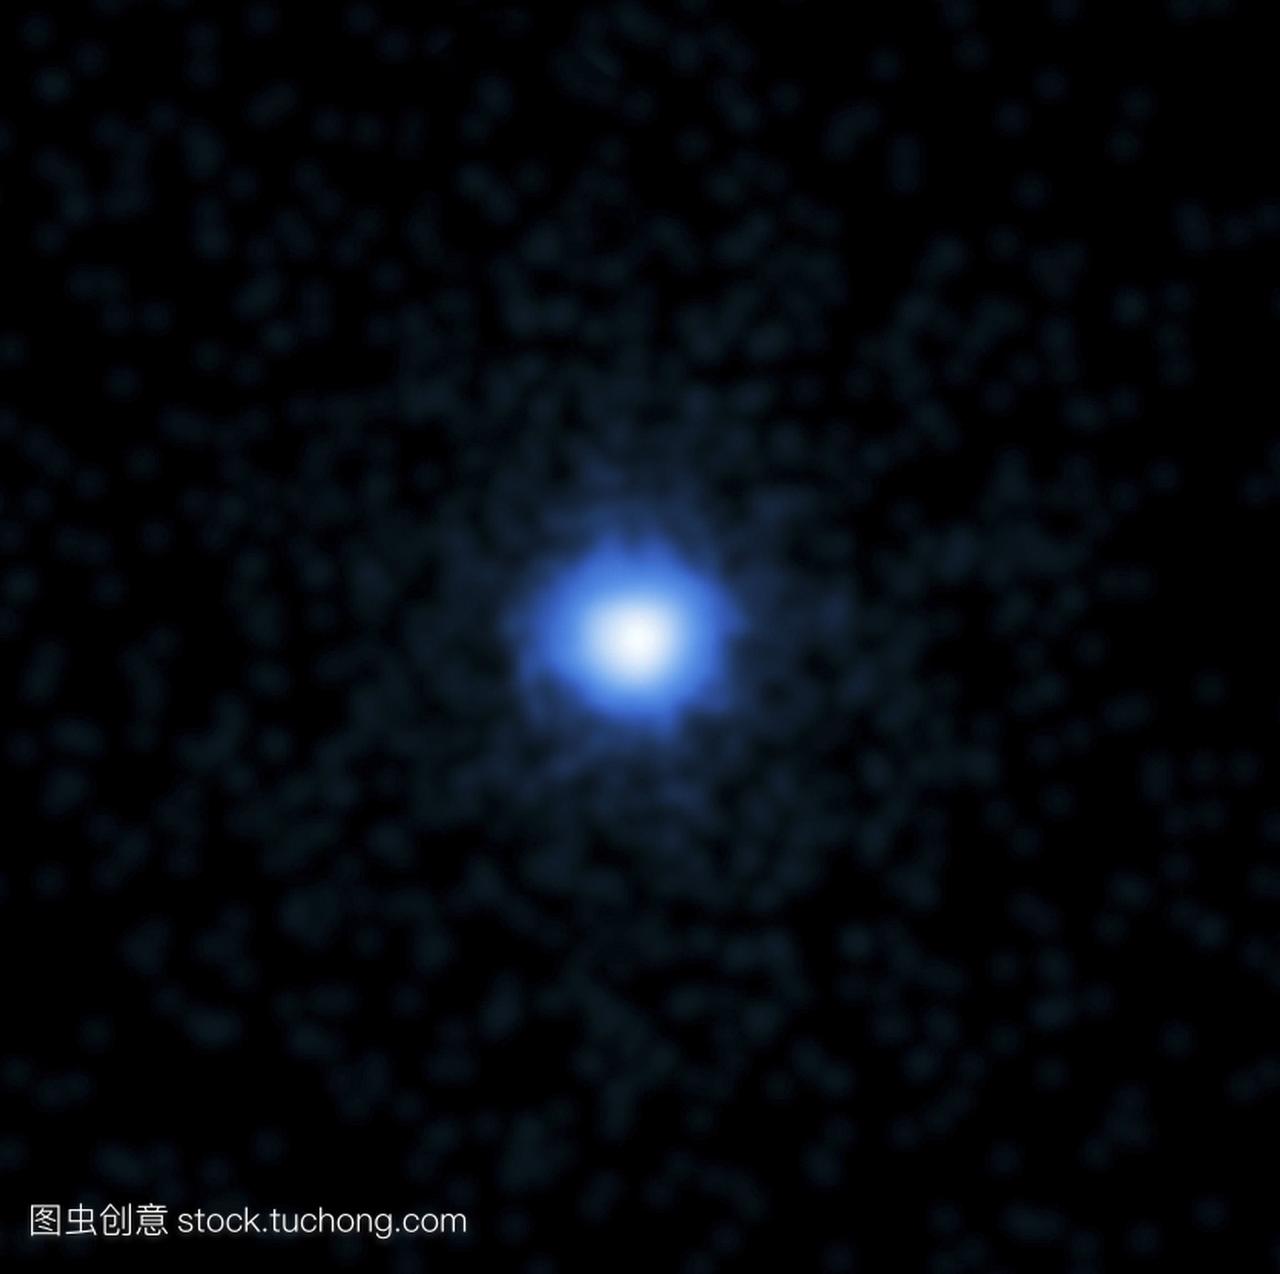 伽马射线爆发GRB110328钱德拉的形象。伽马